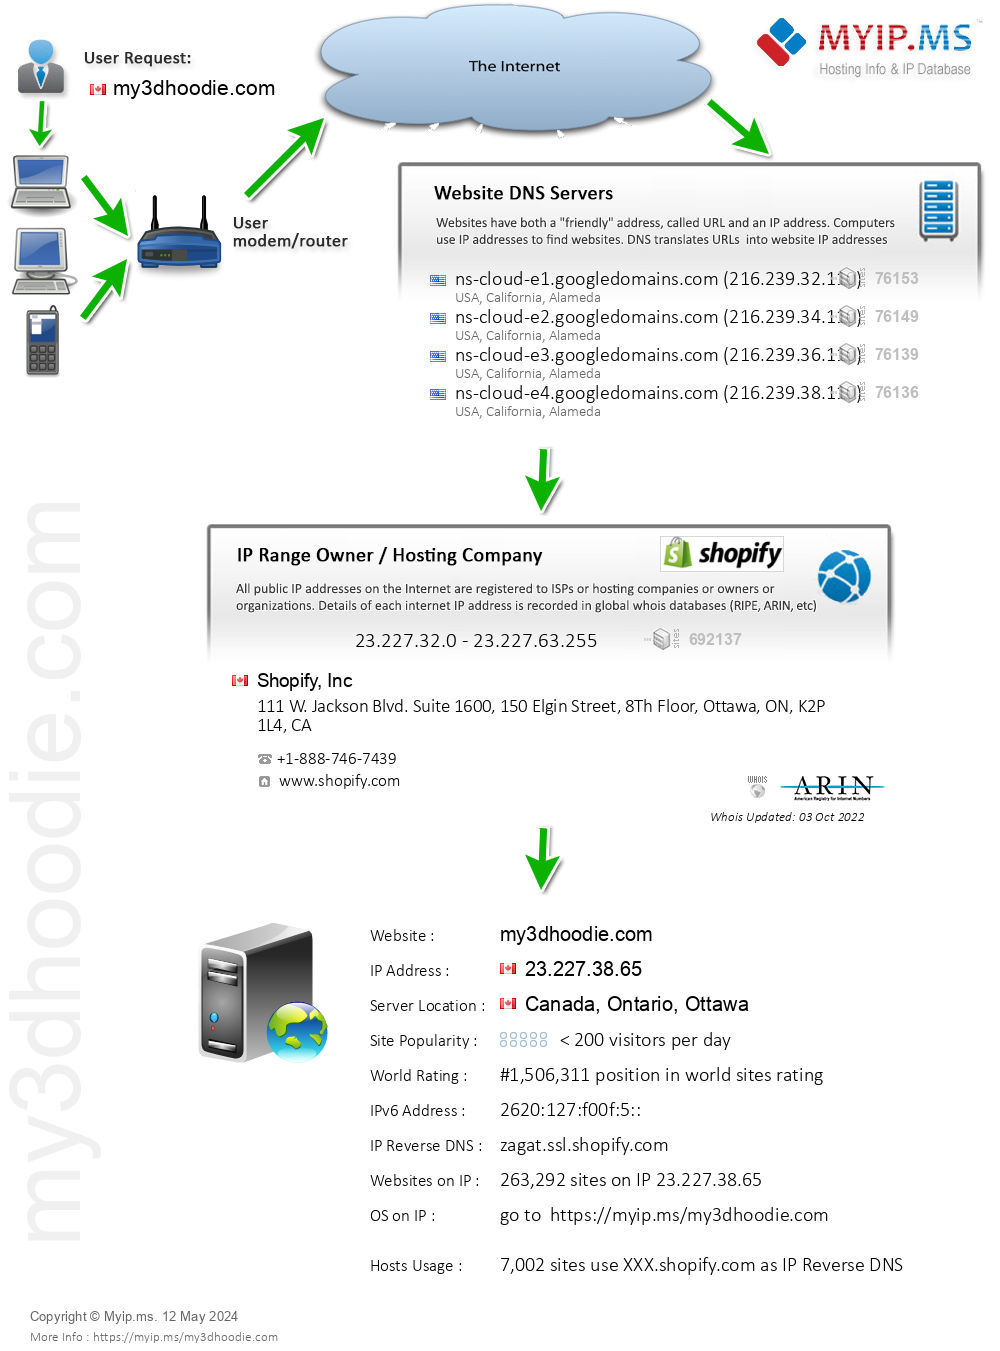 My3dhoodie.com - Website Hosting Visual IP Diagram